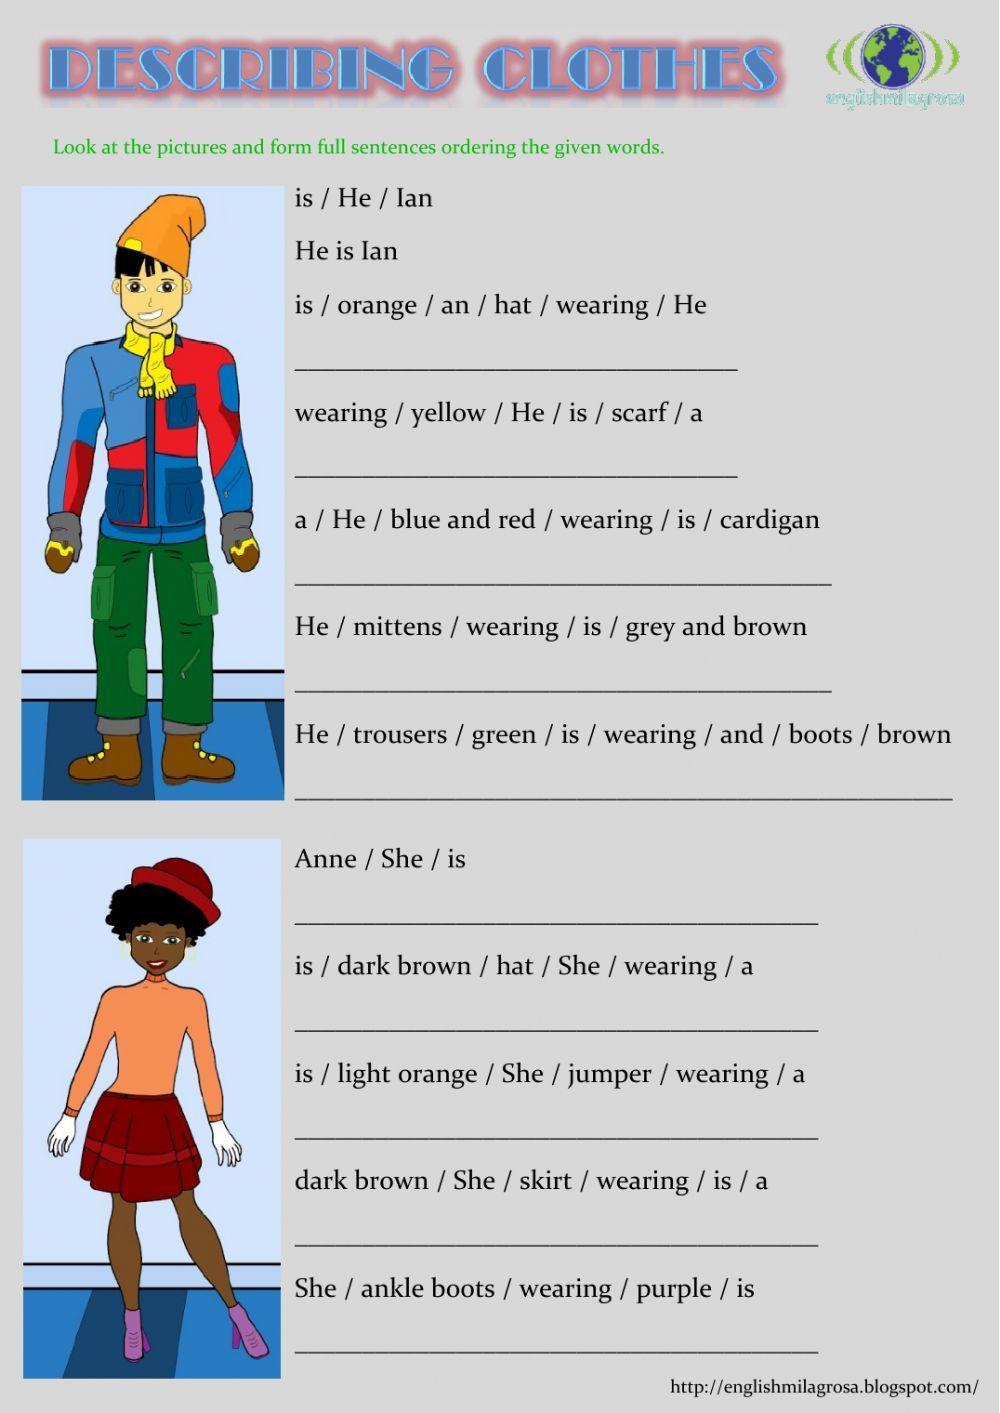 Describing clothes sentences 2